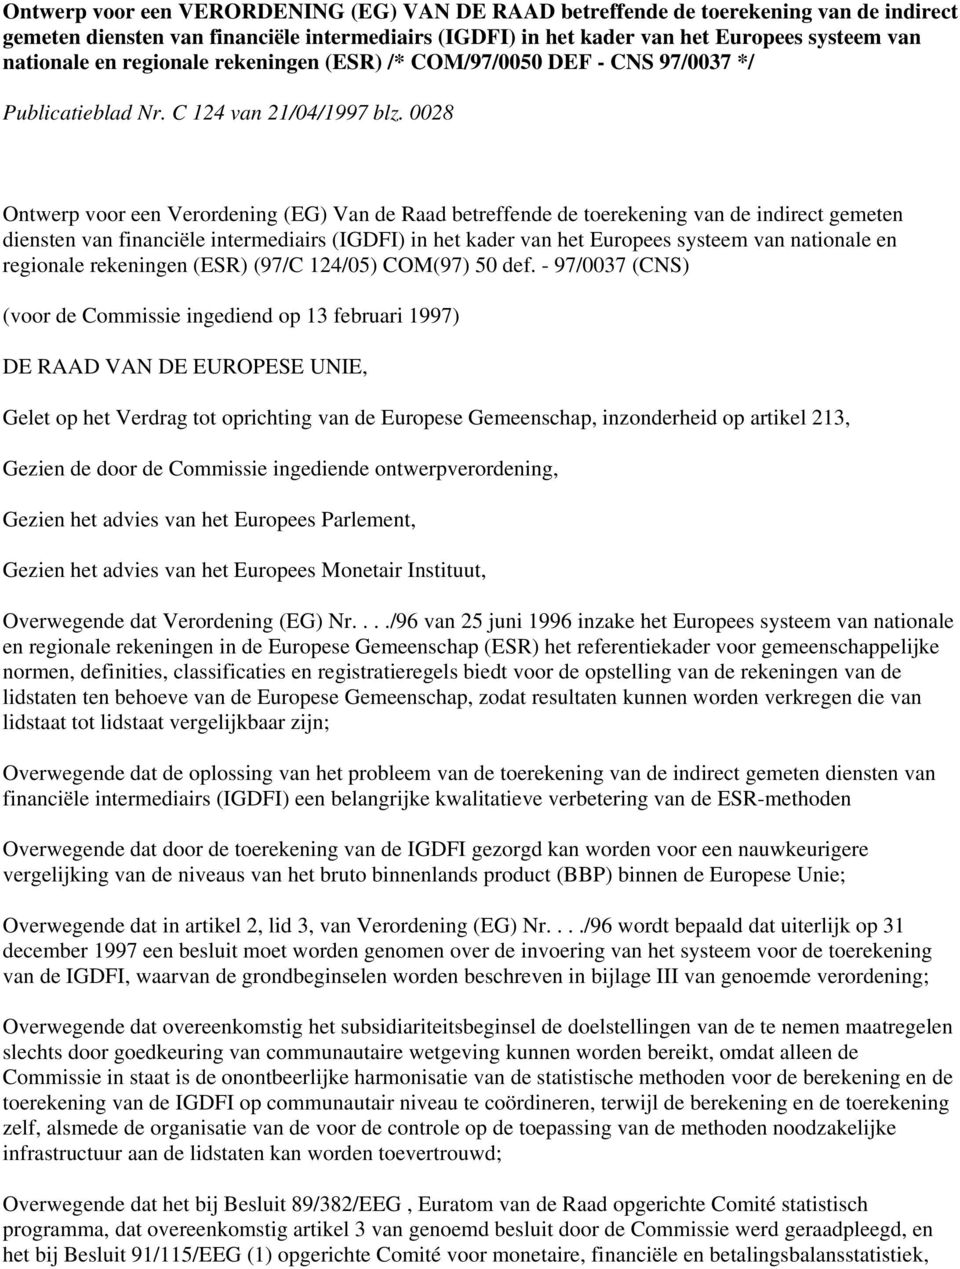 0028 Ontwerp voor een Verordening (EG) Van de Raad betreffende de toerekening van de indirect gemeten diensten van financiële intermediairs (IGDFI) in het kader van het Europees systeem van nationale